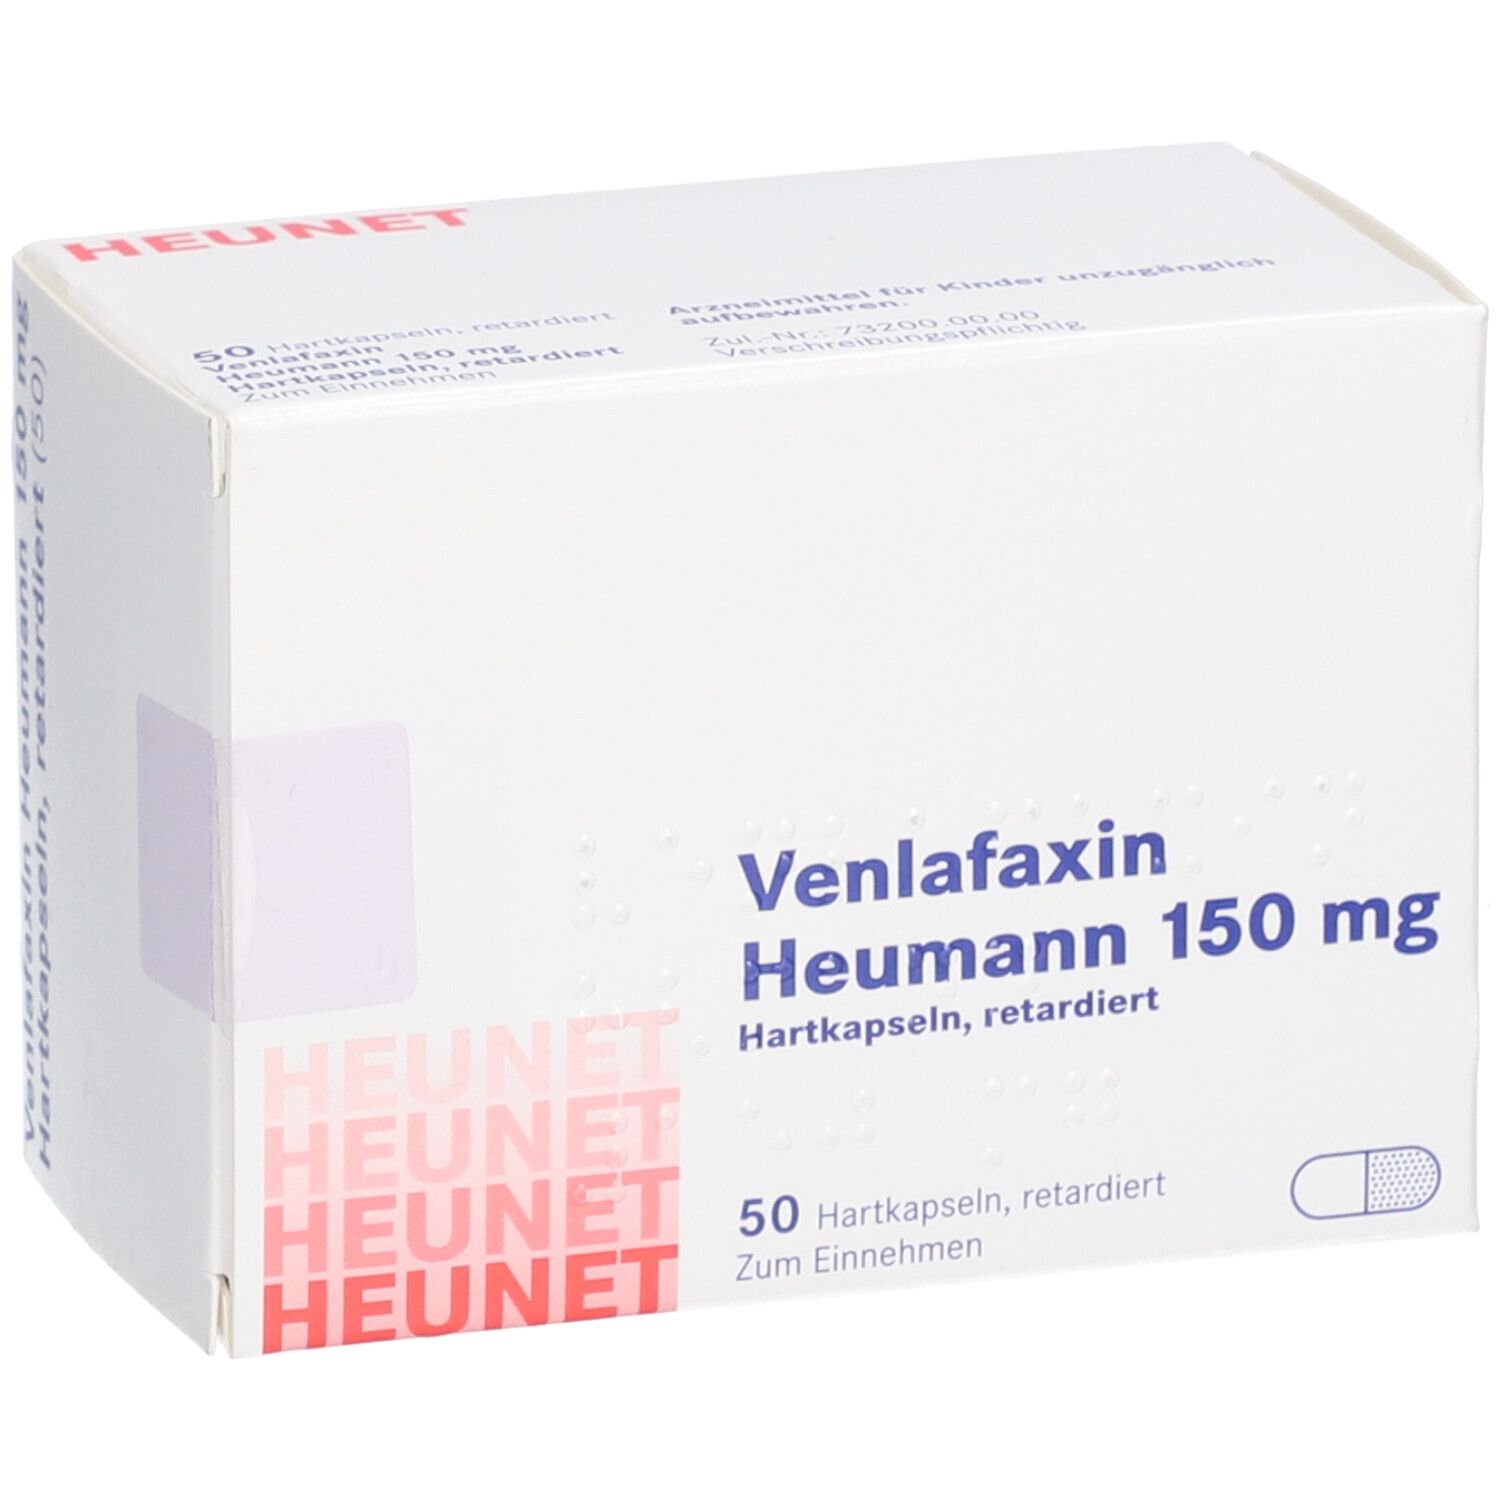 Venlafaxin Heumann 150 mg